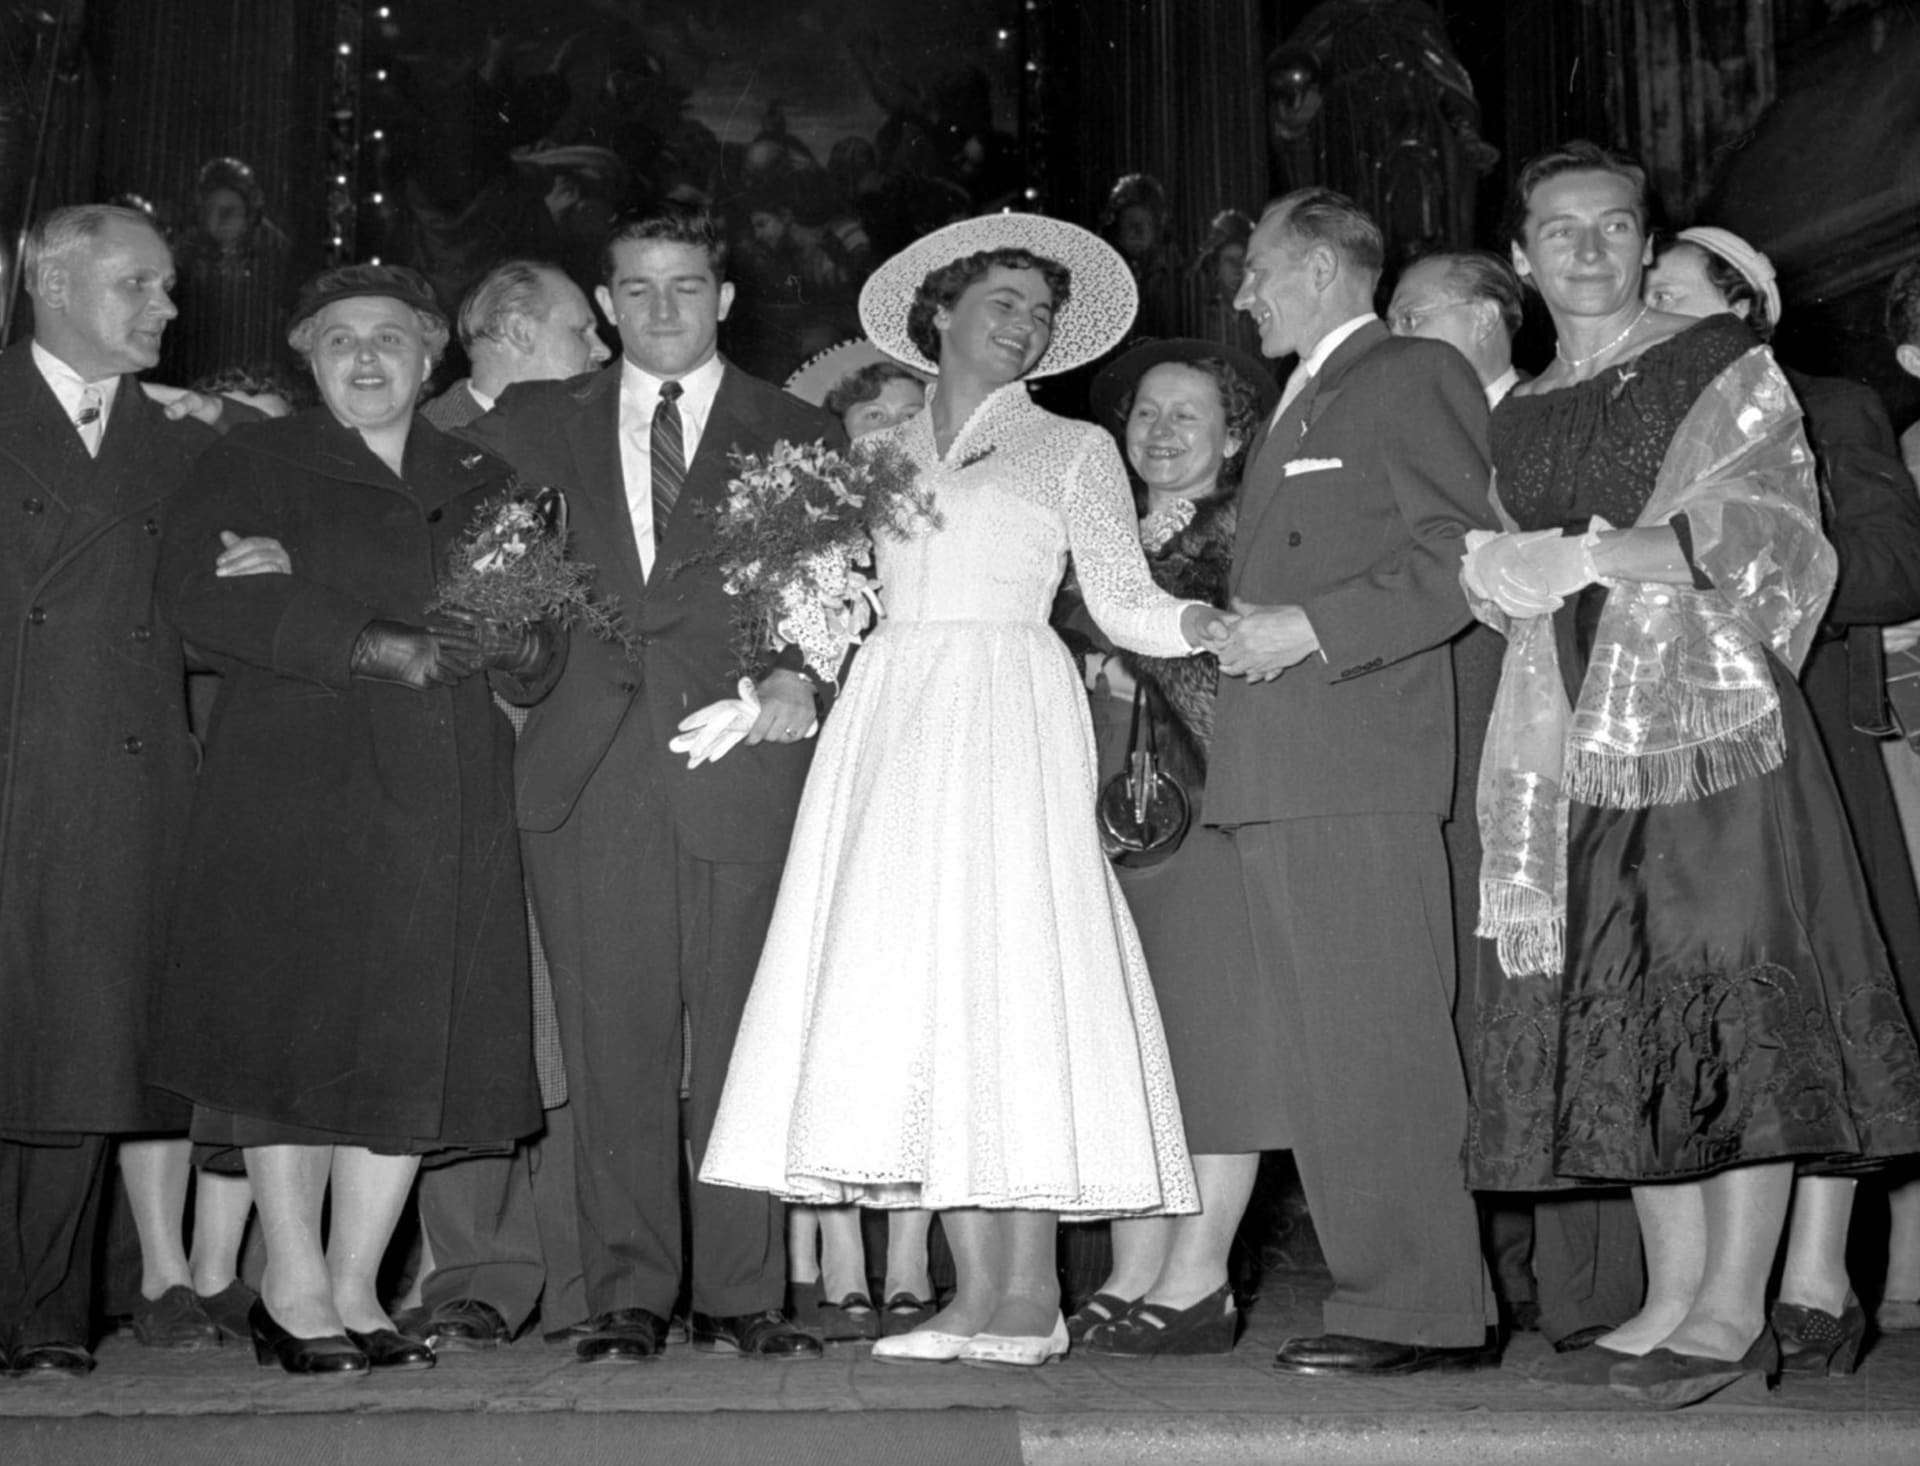 Snímek ze svatebního obřadu Olgy Fikotové a Harolda Connollyho v kostele sv. Salvátora. Emil Zátopek a Dana Zátopková blahopřejí novomanželům.